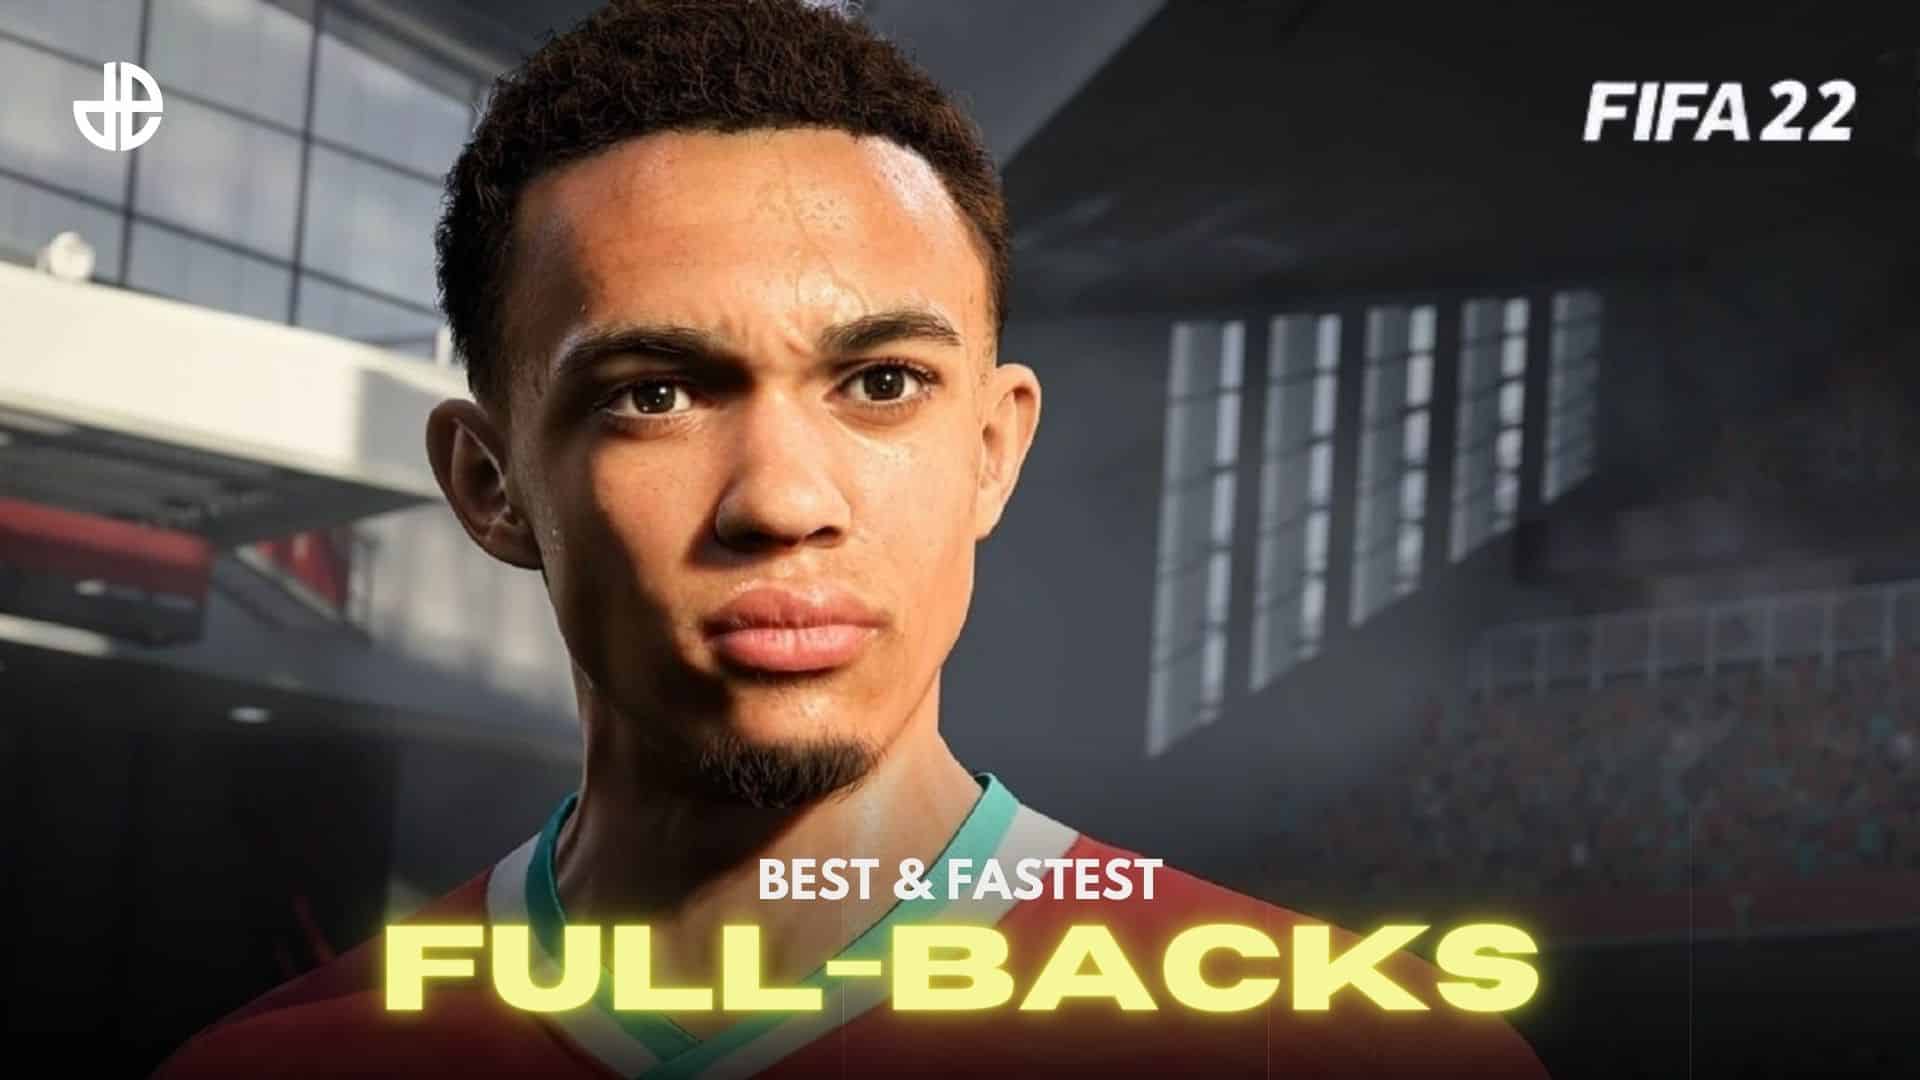 Best full backs in FIFA 22